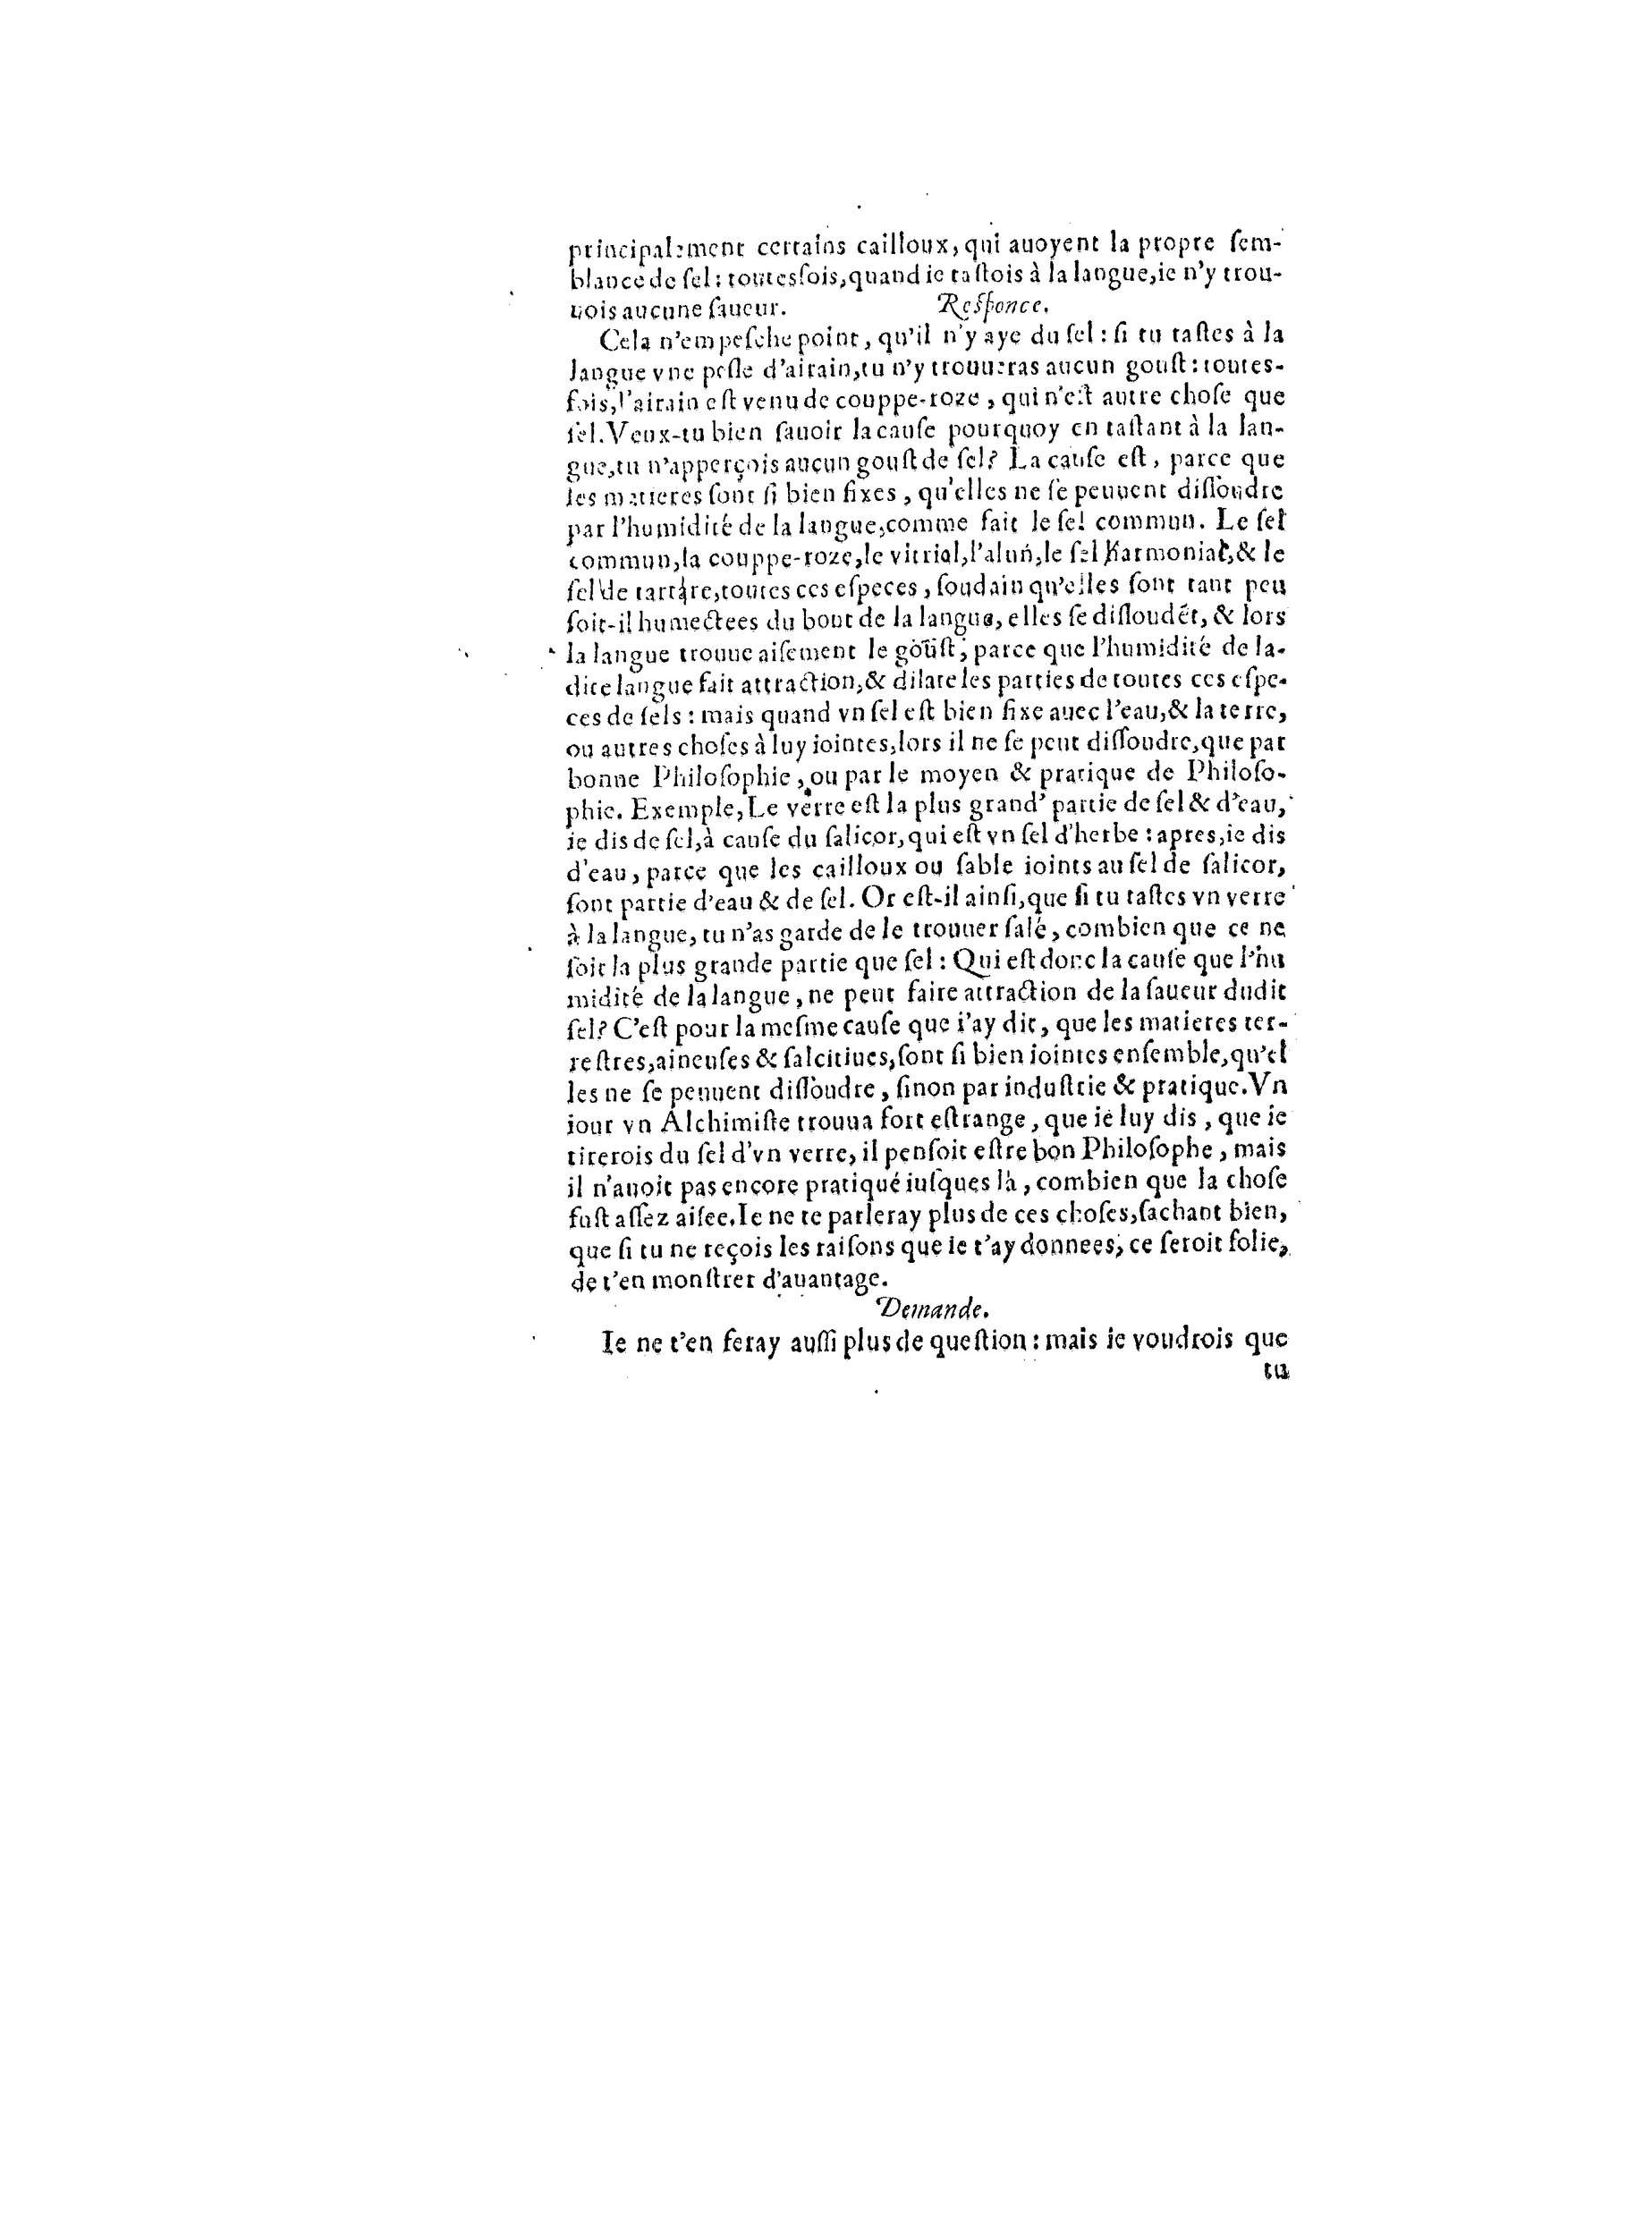 1563 Recepte veritable Berton_BNF_Page_057.jpg